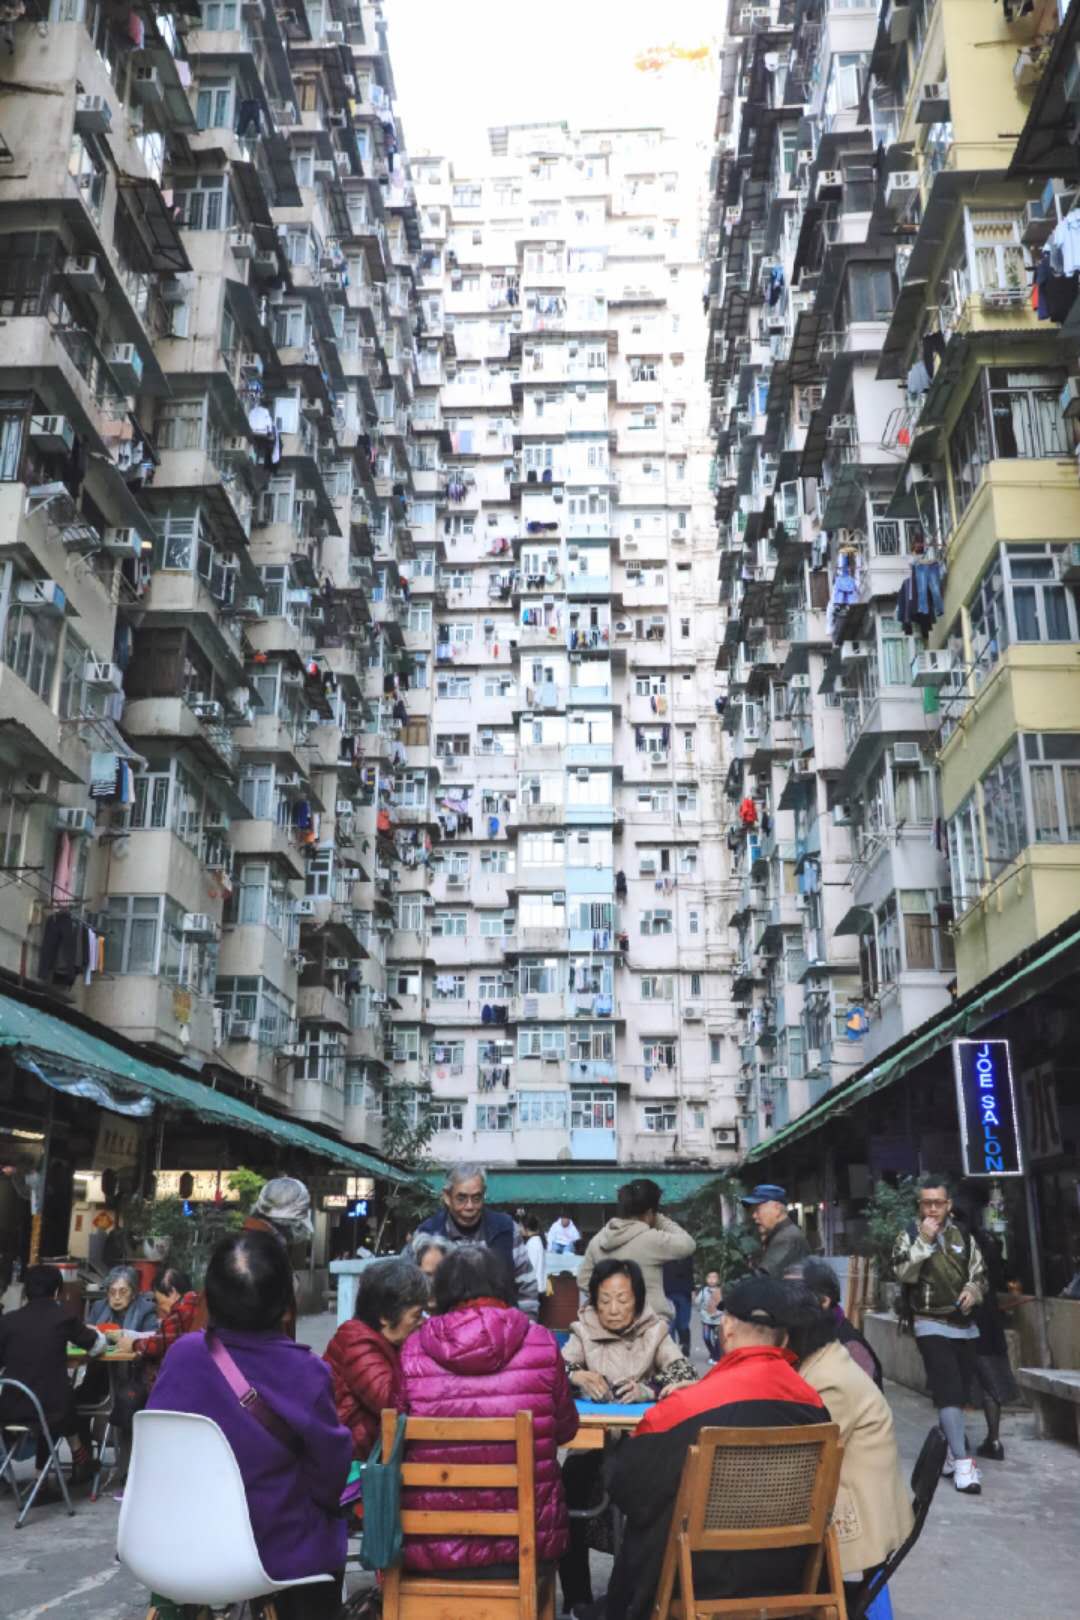 新一代网红打卡地,变形金刚带火的香港居民楼